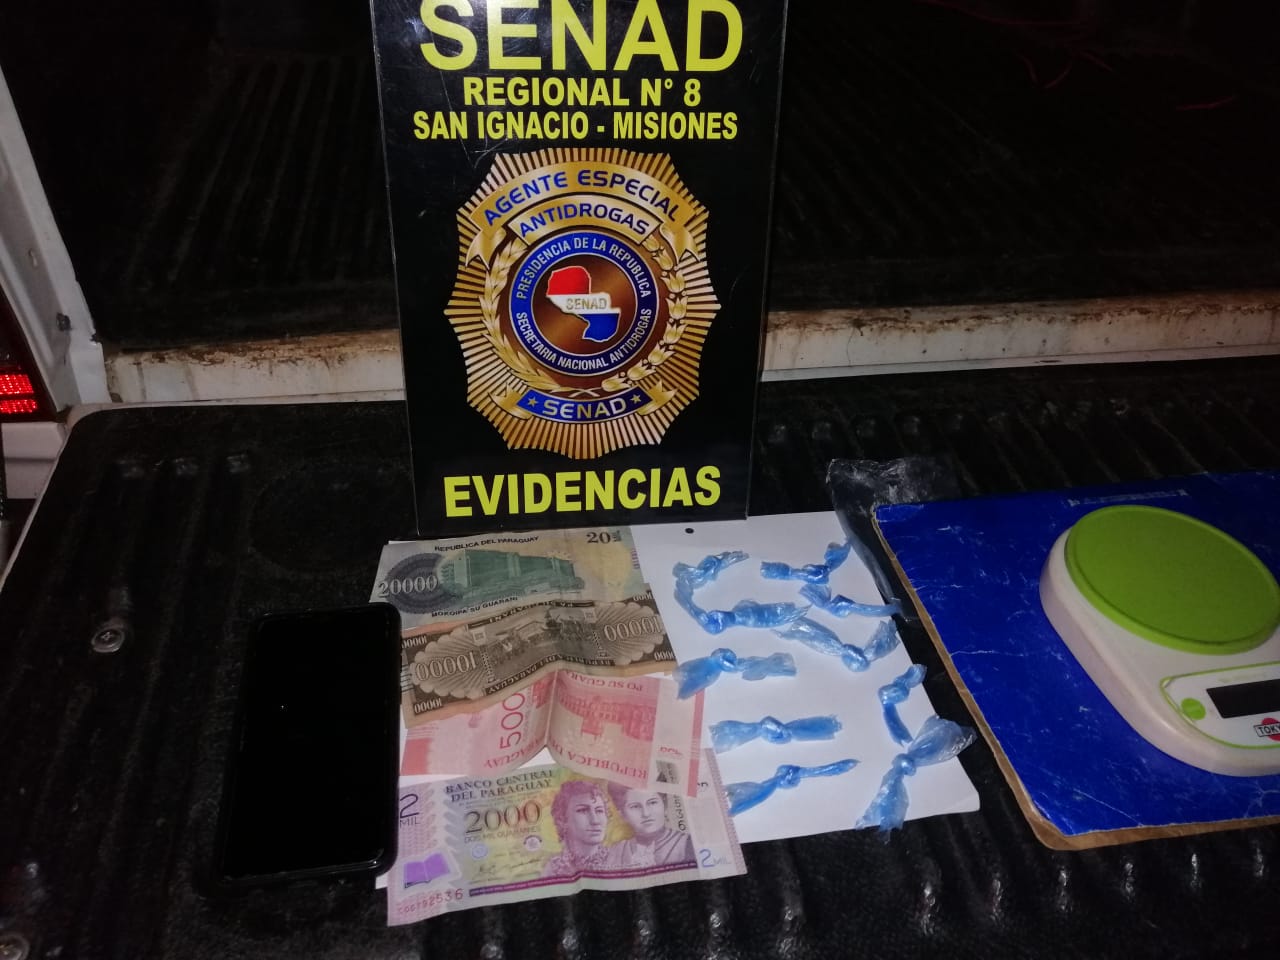 En su poder, los agentes hallaron al menos 10 dosis de cocaína y dinero en efectivo. Foto: Senad